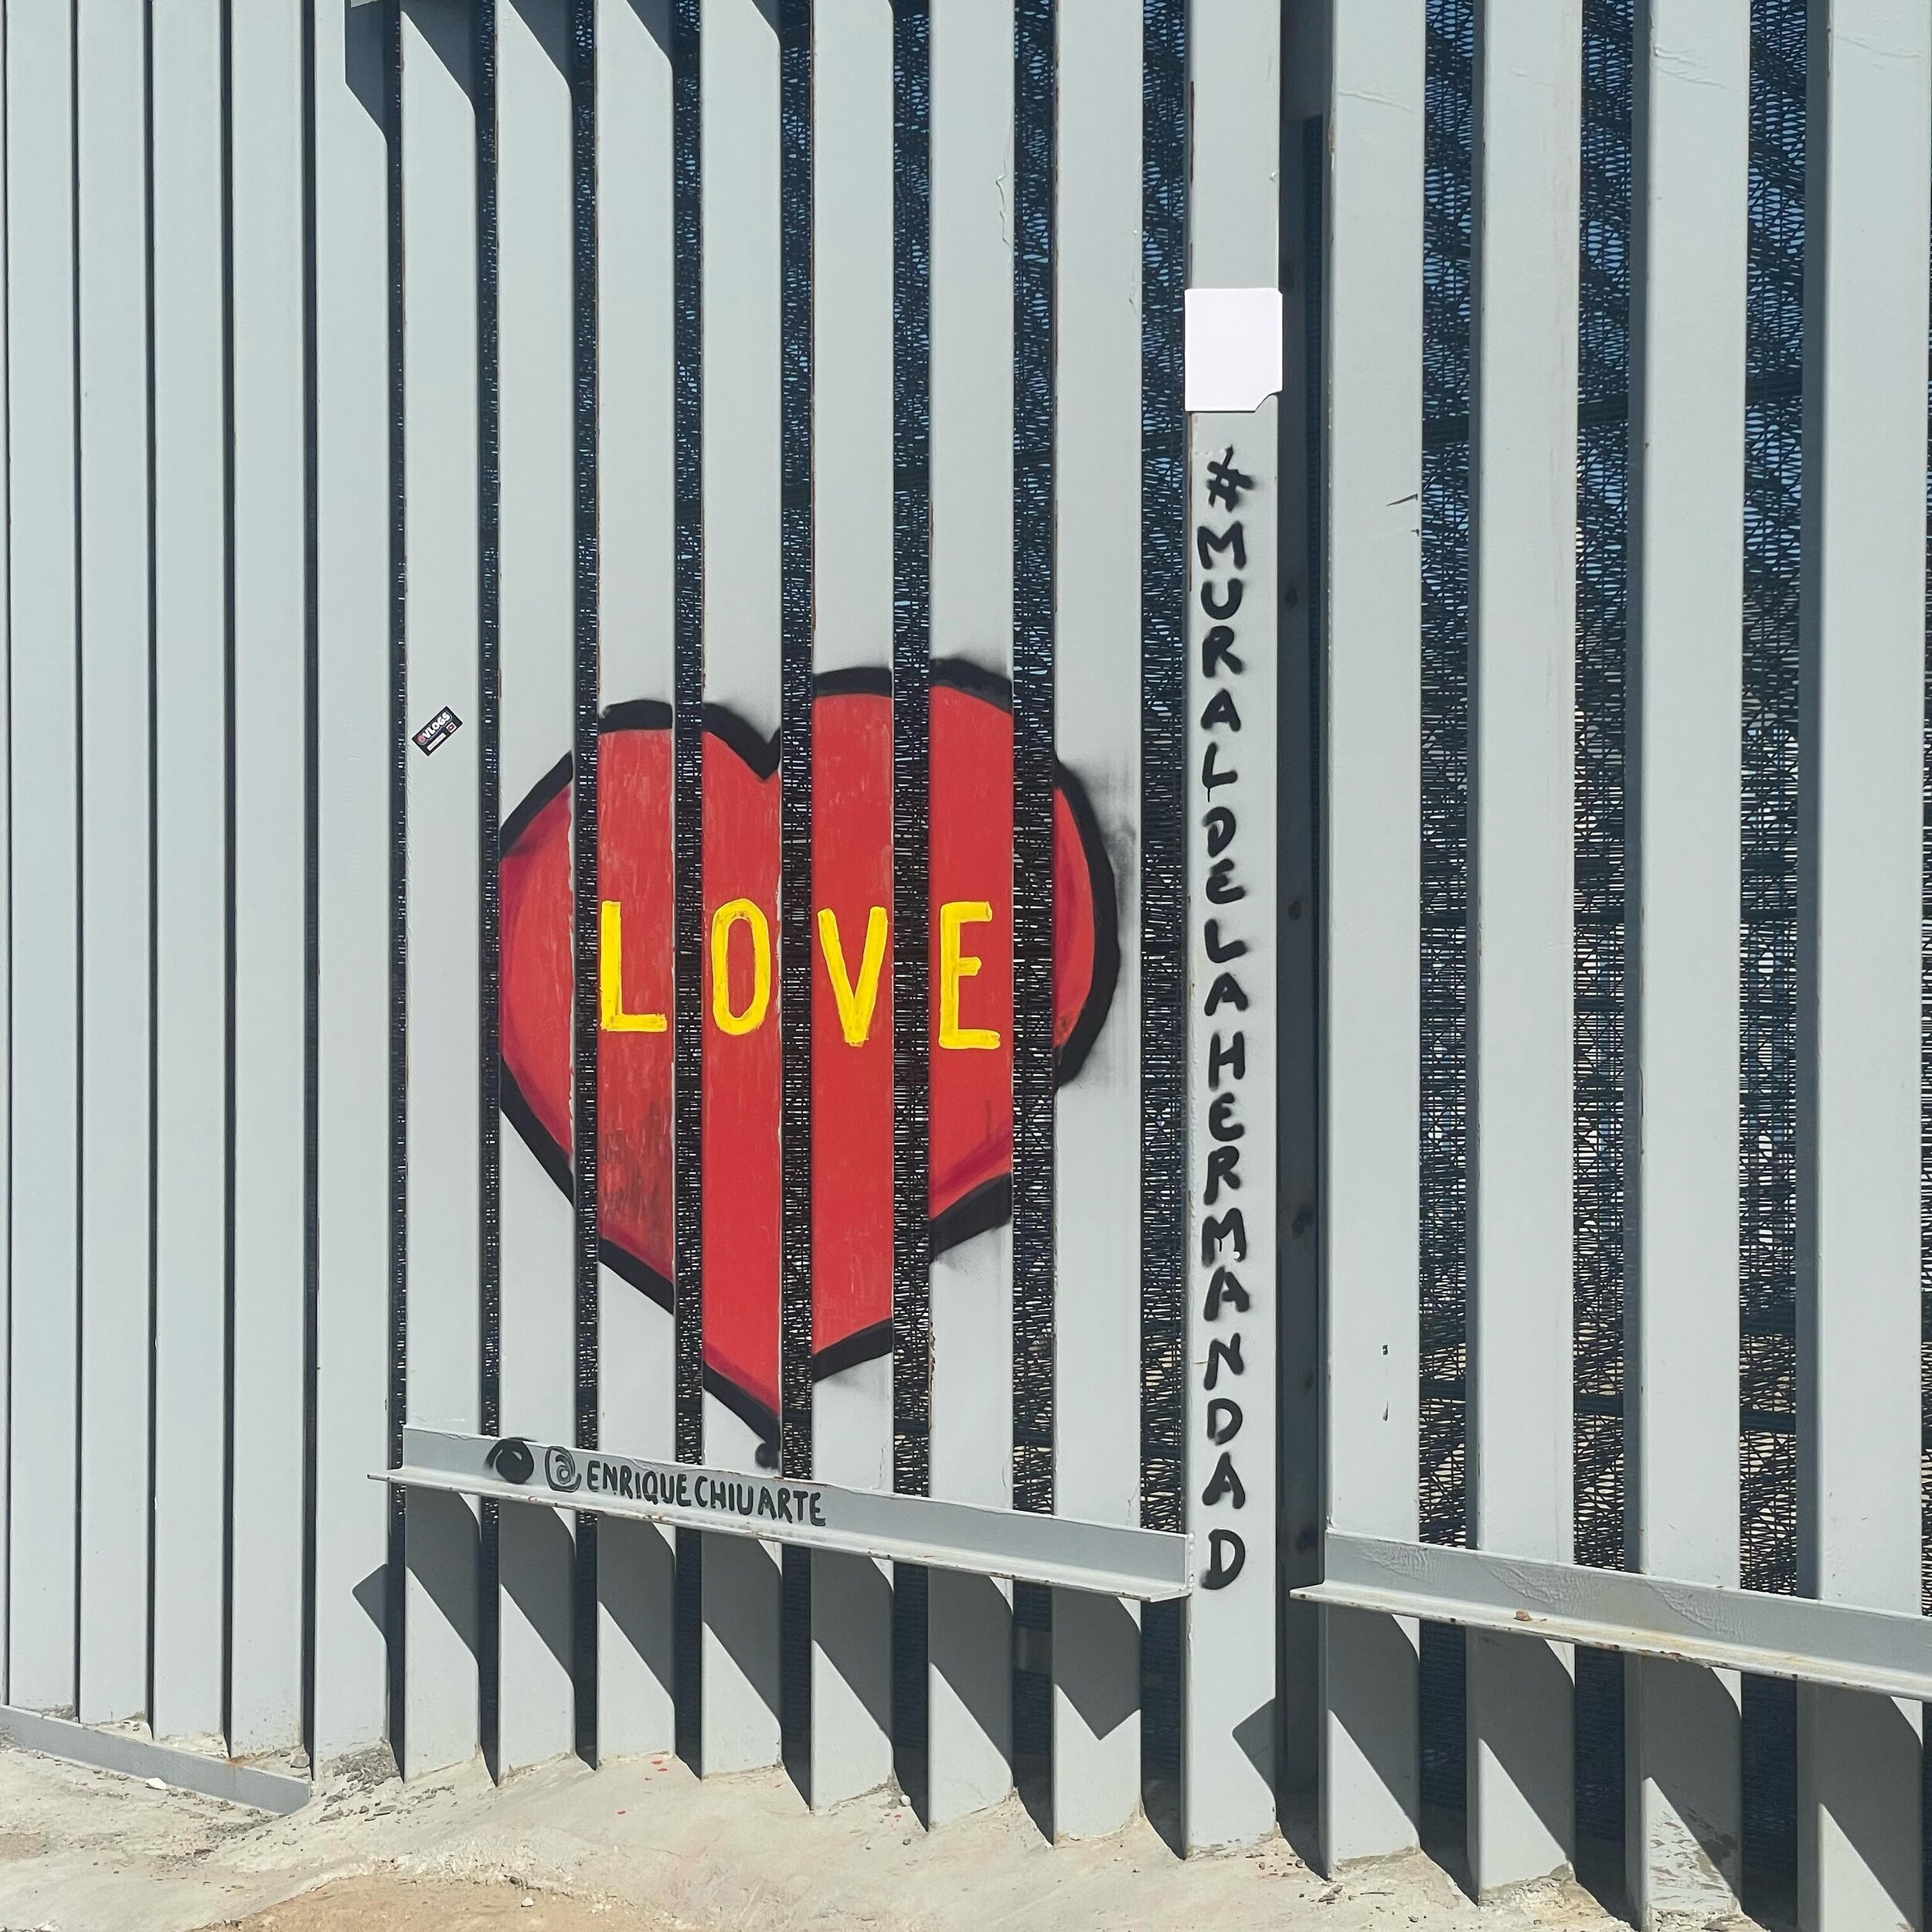 To paint love over pain. #borderwall #tijuana